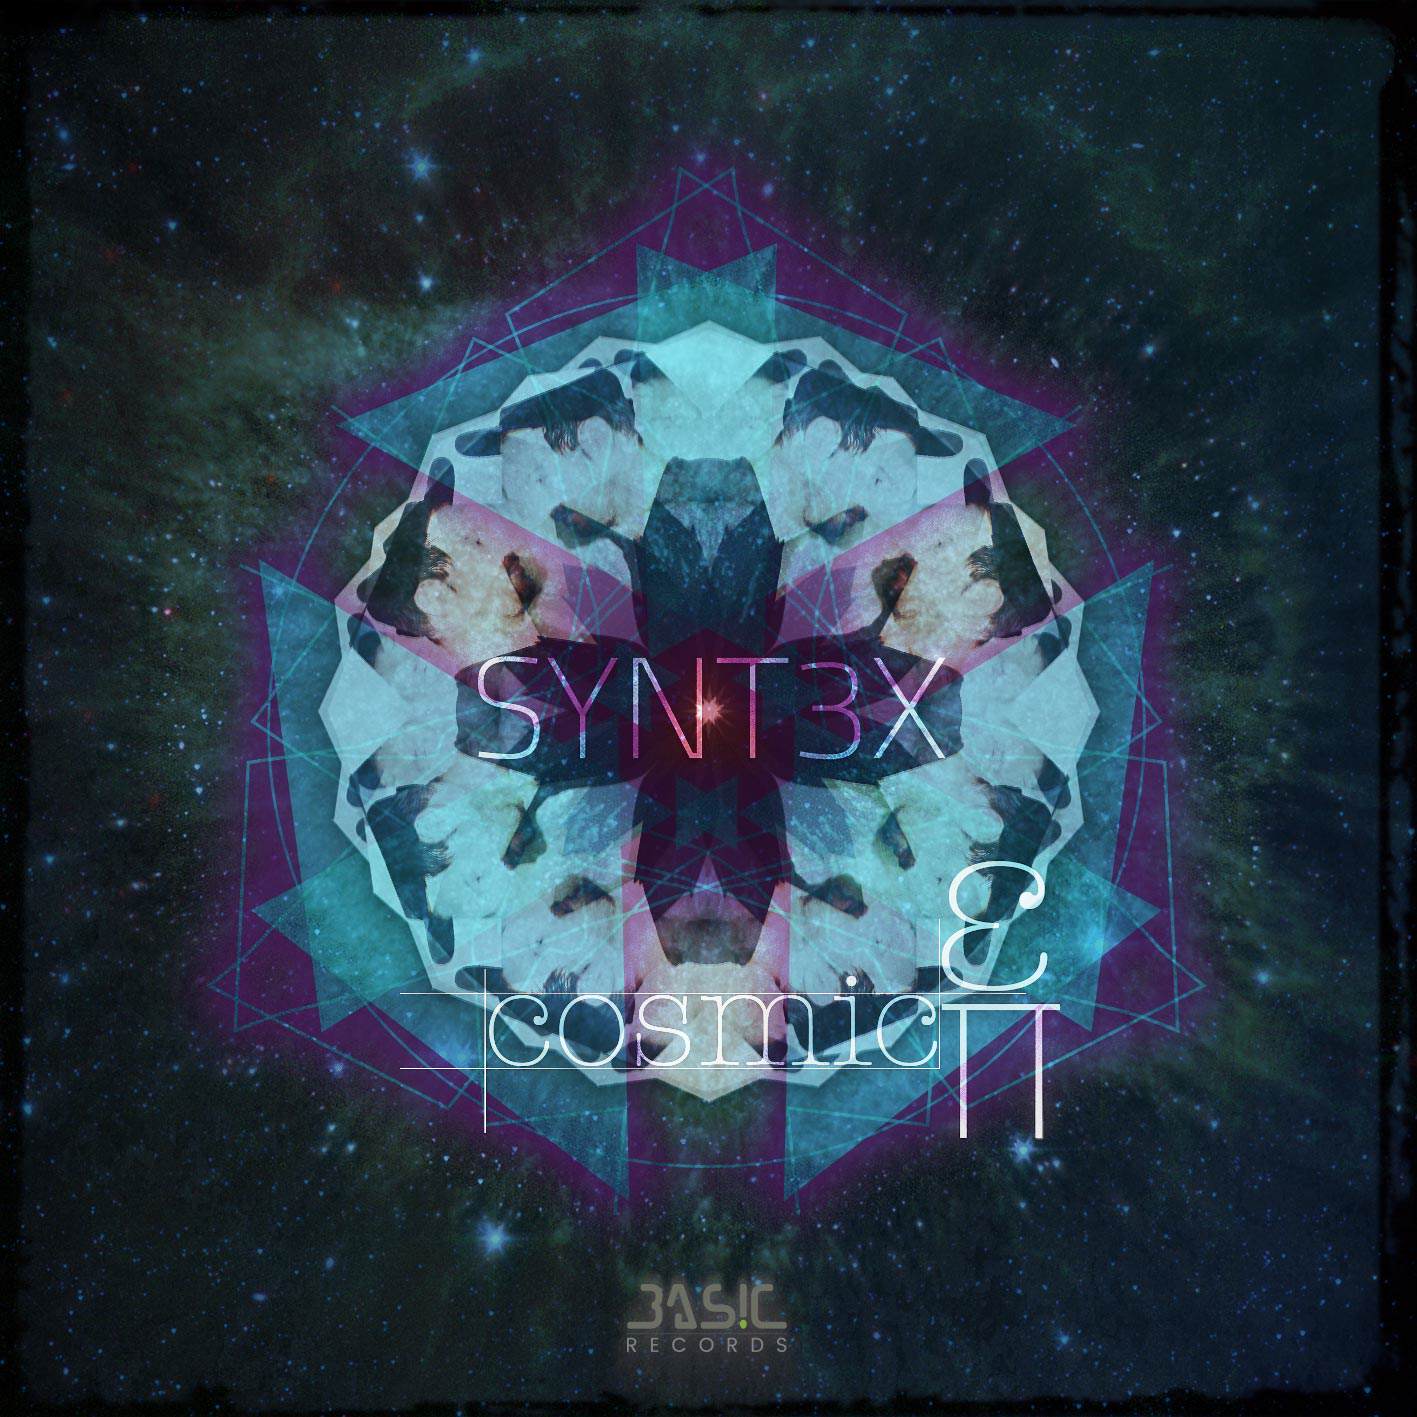 SYNT3X - Cosmic EP